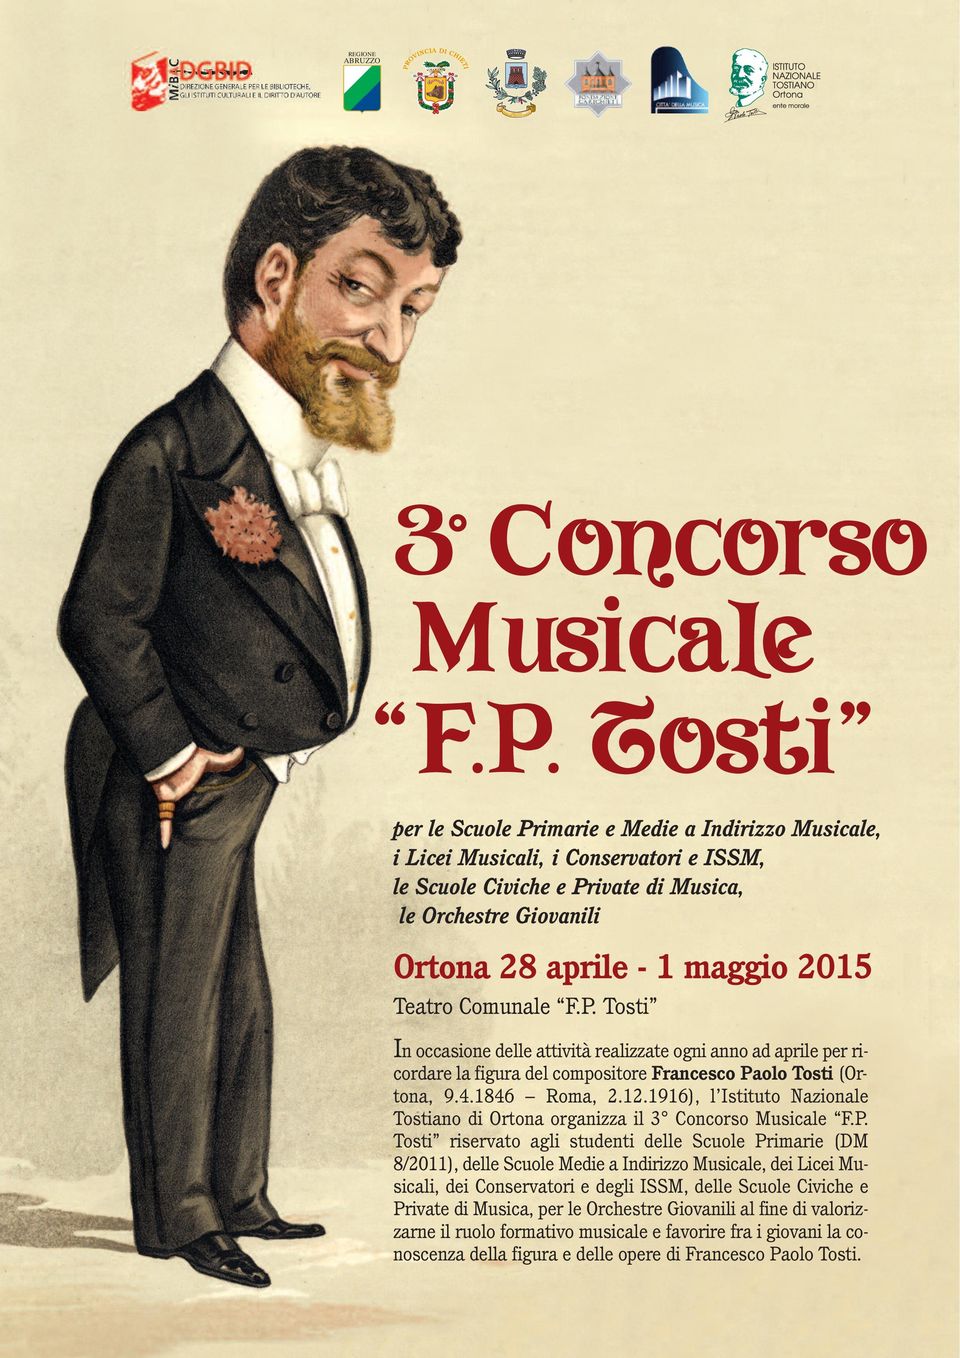 Teatro Comunale F.P. Tosti In occasione delle attività realizzate ogni anno ad aprile per ricordare la figura del compositore Francesco Paolo Tosti (Ortona, 9.4.1846 Roma, 2.12.